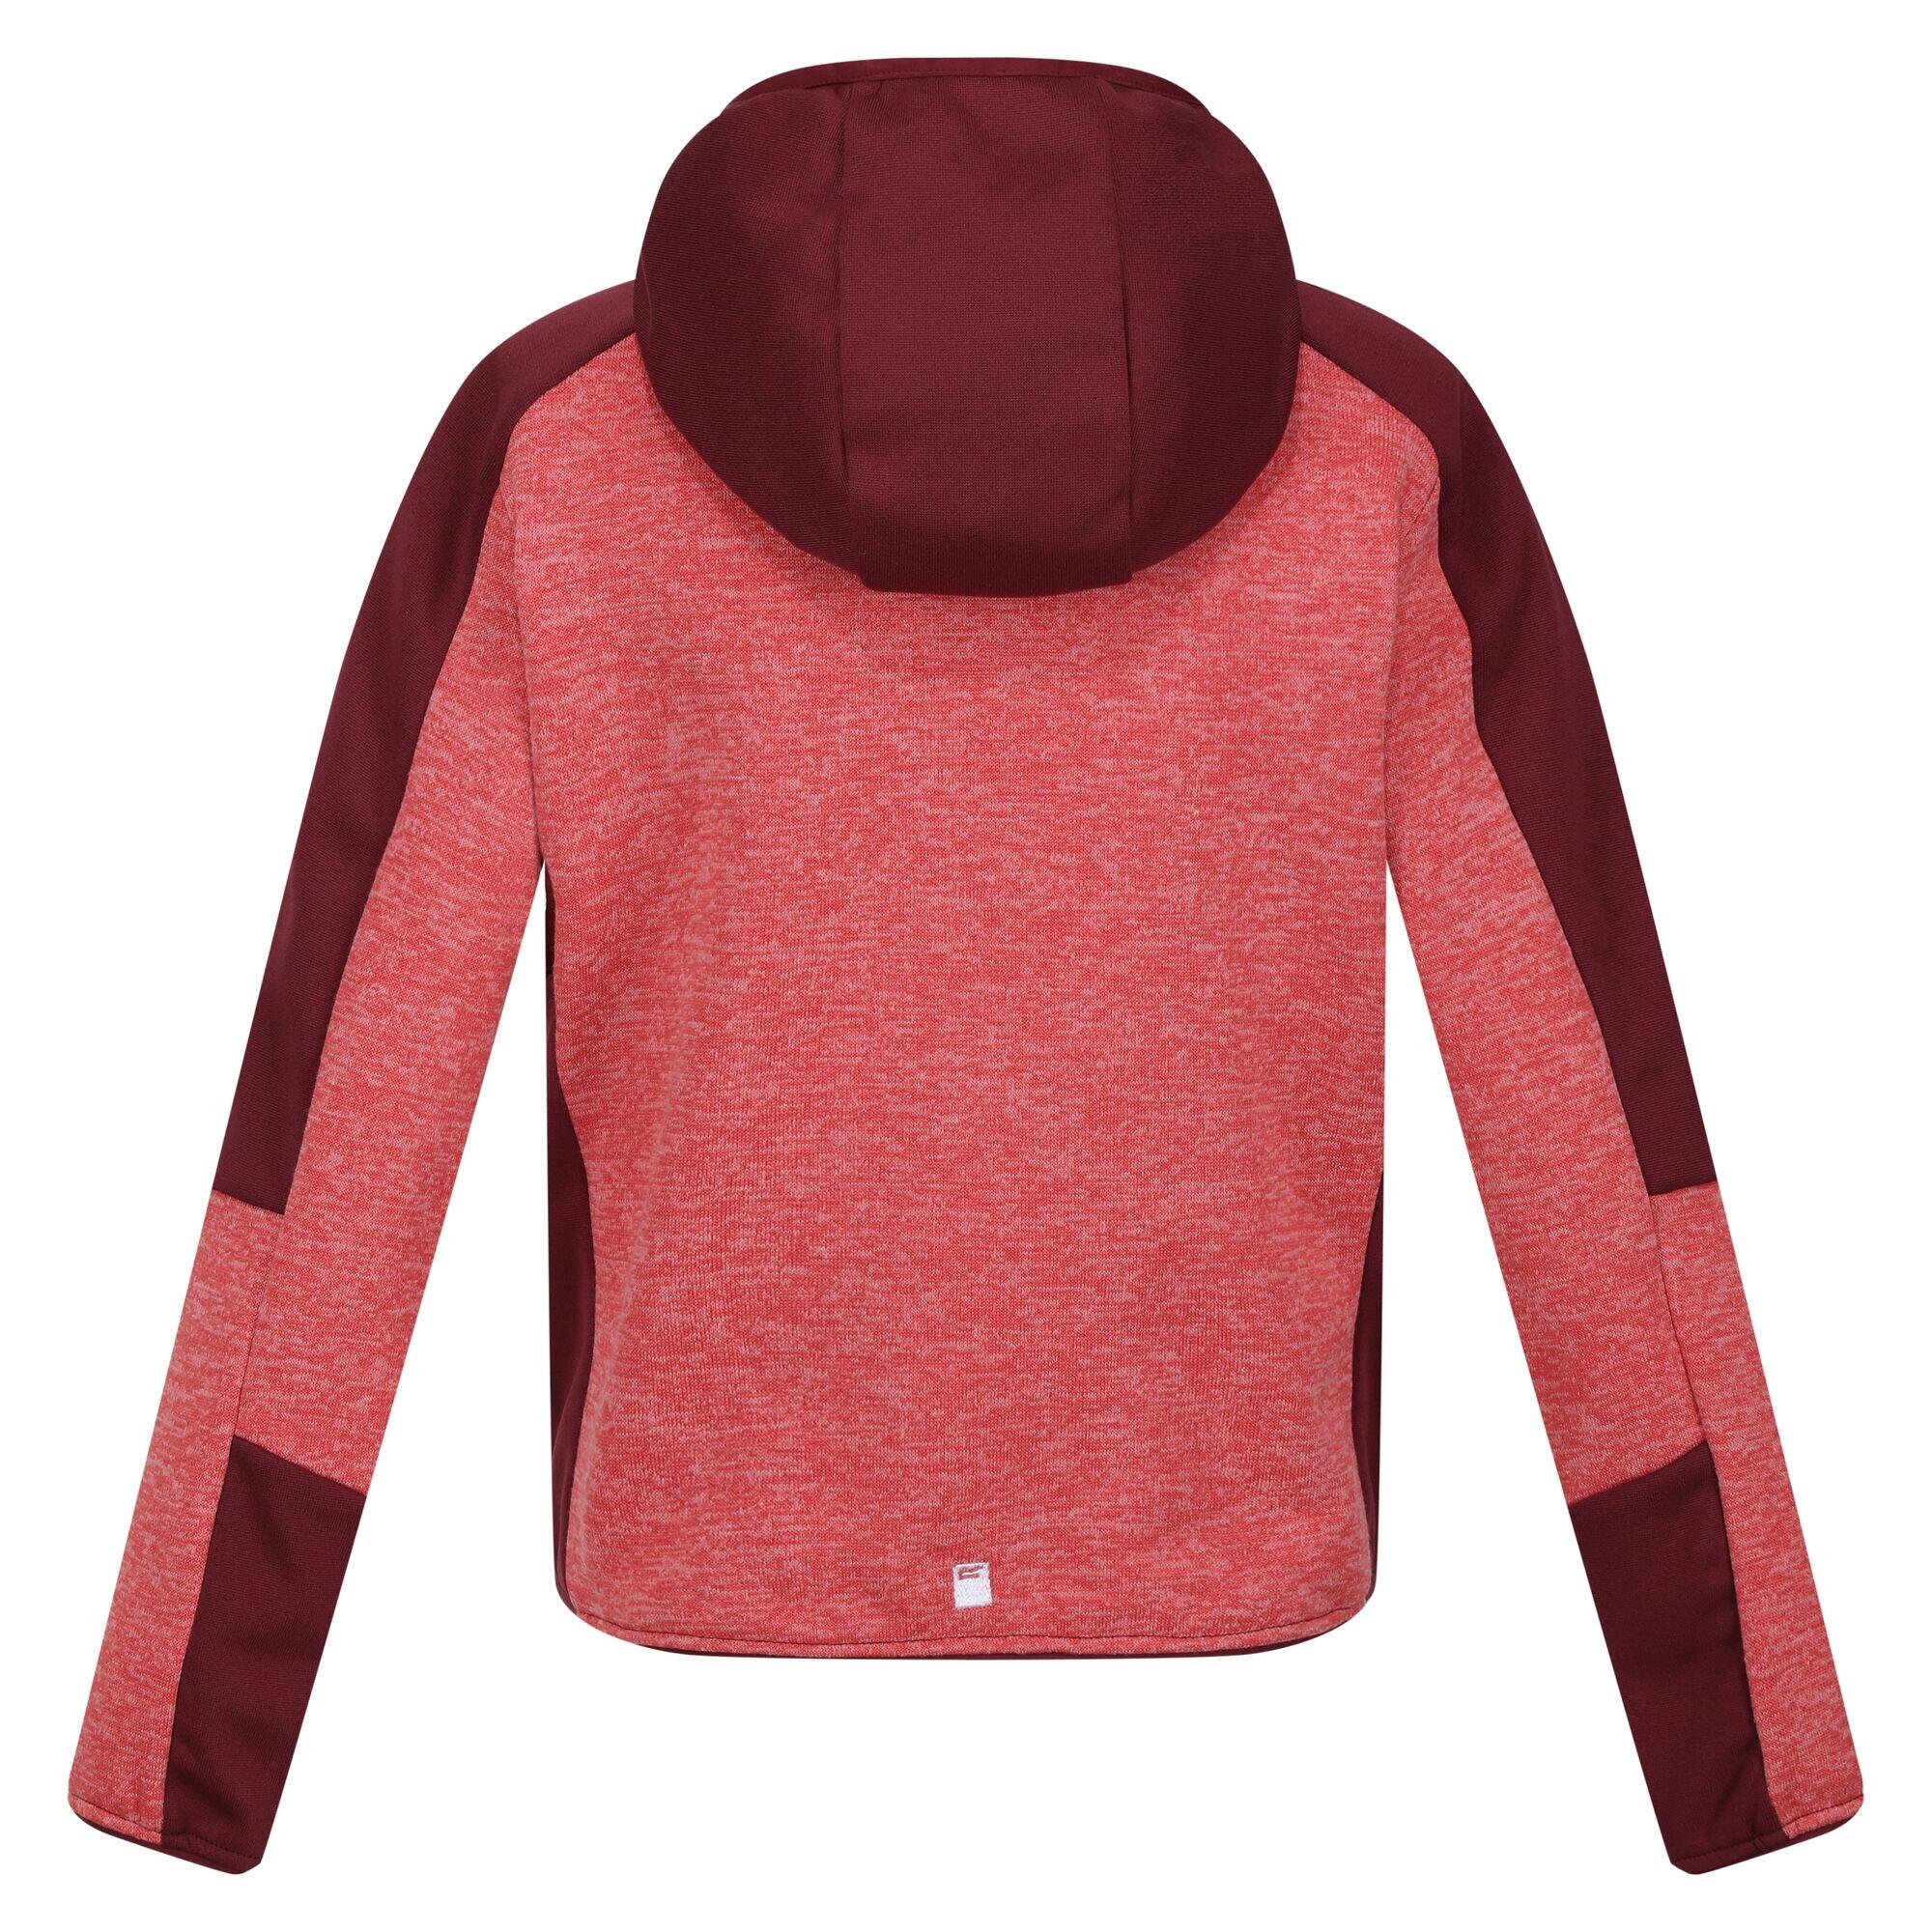 Childrens/Kids Dissolver VII Full Zip Fleece Jacket (Mineral Red/Burgundy) 2/5